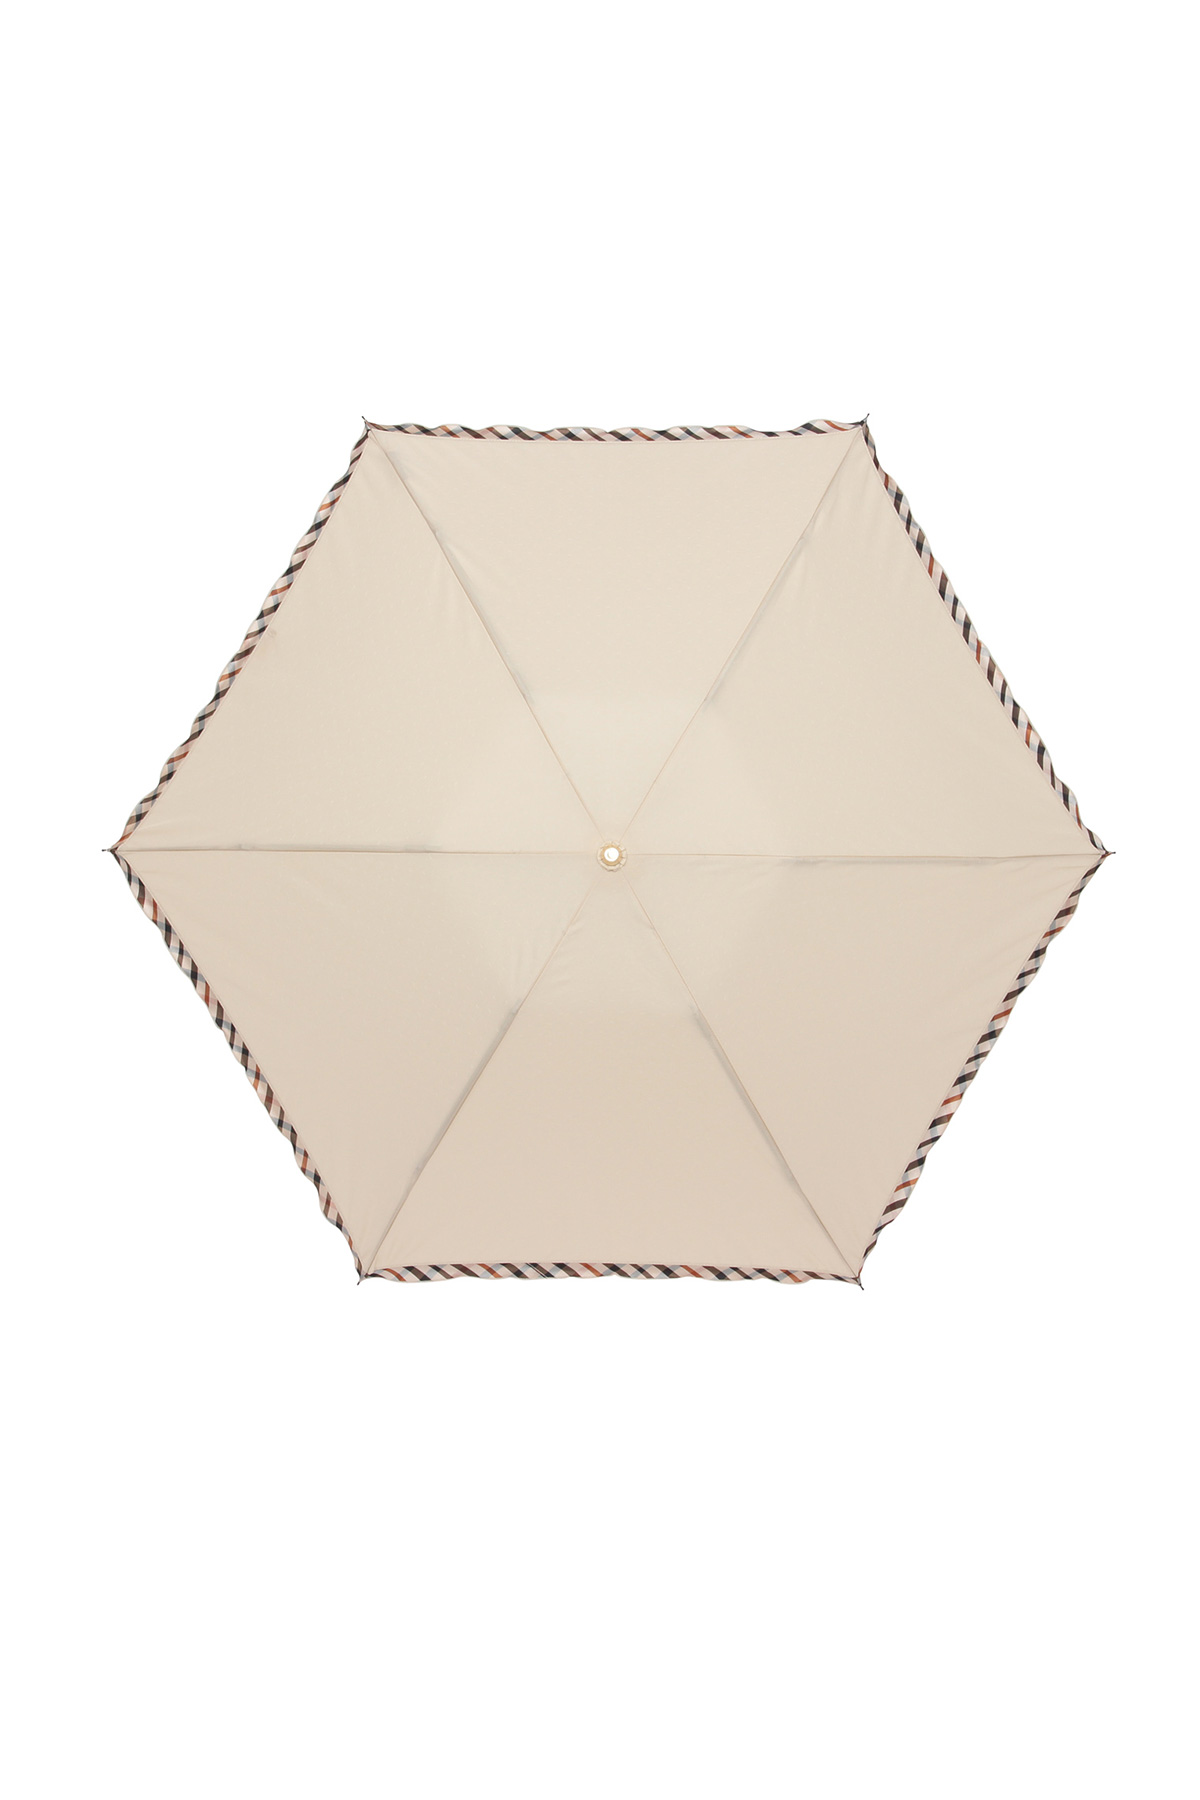 【雨傘】折りたたみ傘ドビーフリル 詳細画像 4